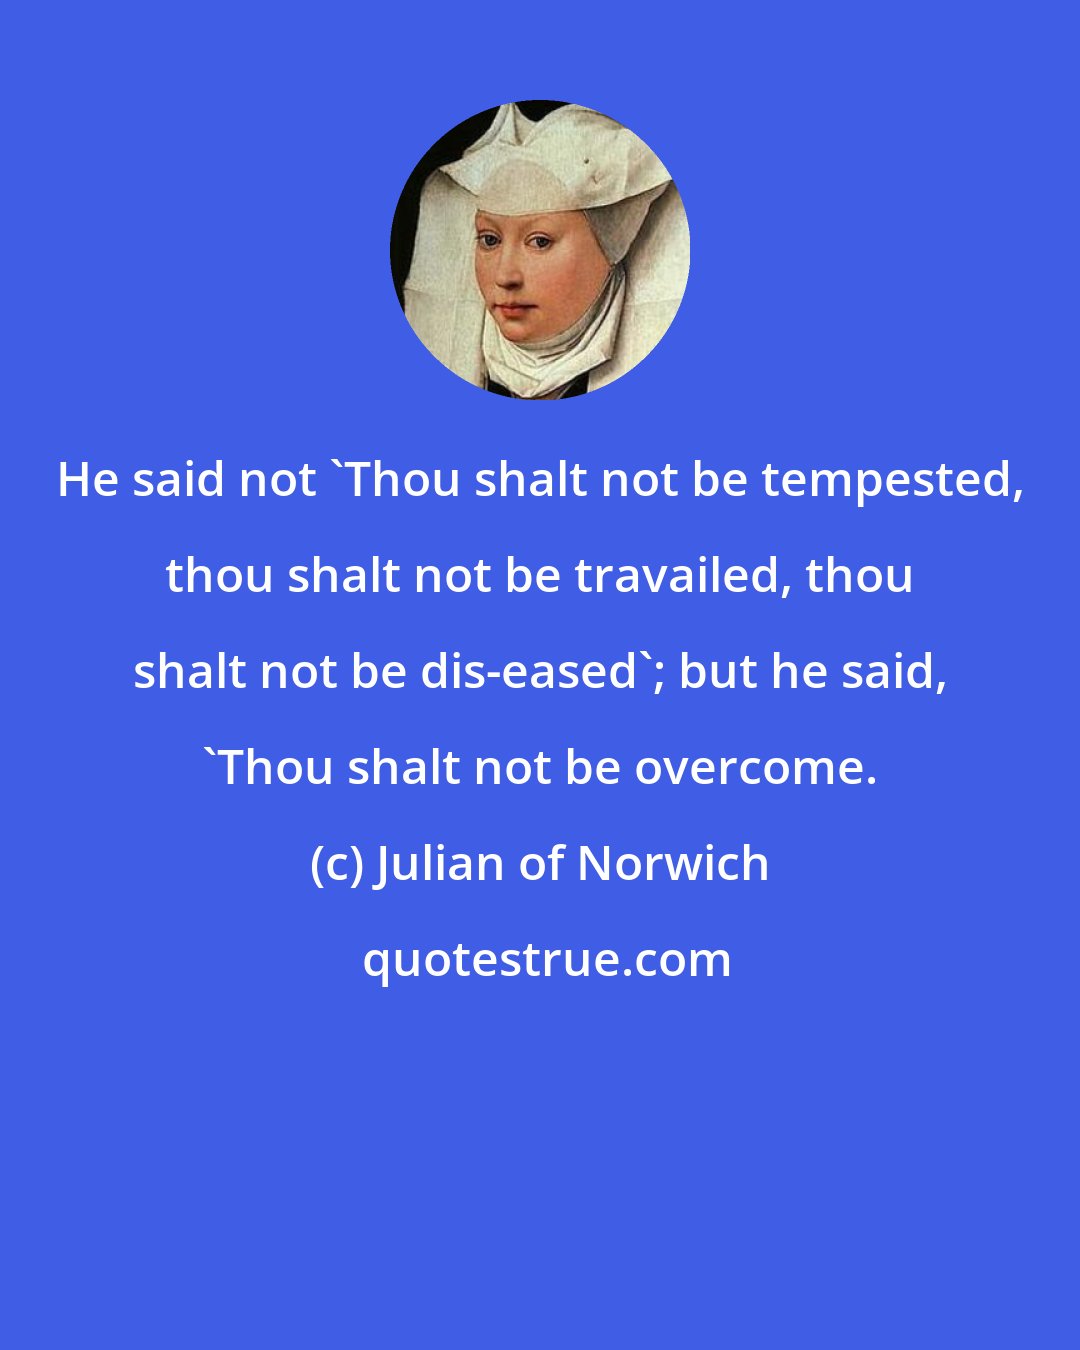 Julian of Norwich: He said not 'Thou shalt not be tempested, thou shalt not be travailed, thou shalt not be dis-eased'; but he said, 'Thou shalt not be overcome.